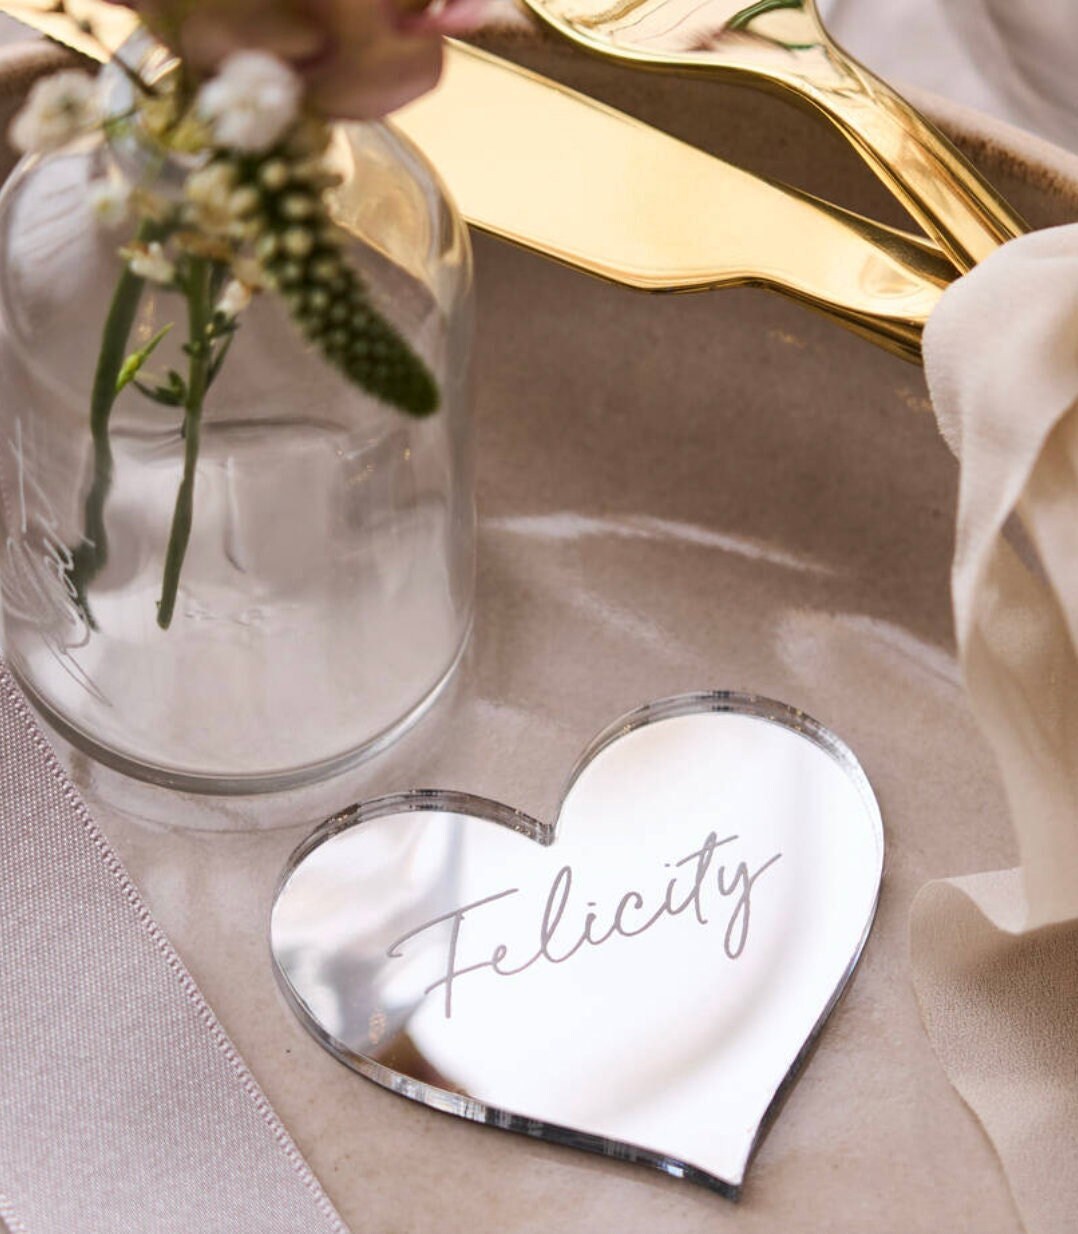 Tag / Segnaposto cuore in plexiglass specchiato rettangolare oro o argento Battesimo / Matrimonio / Nozze / Comunione